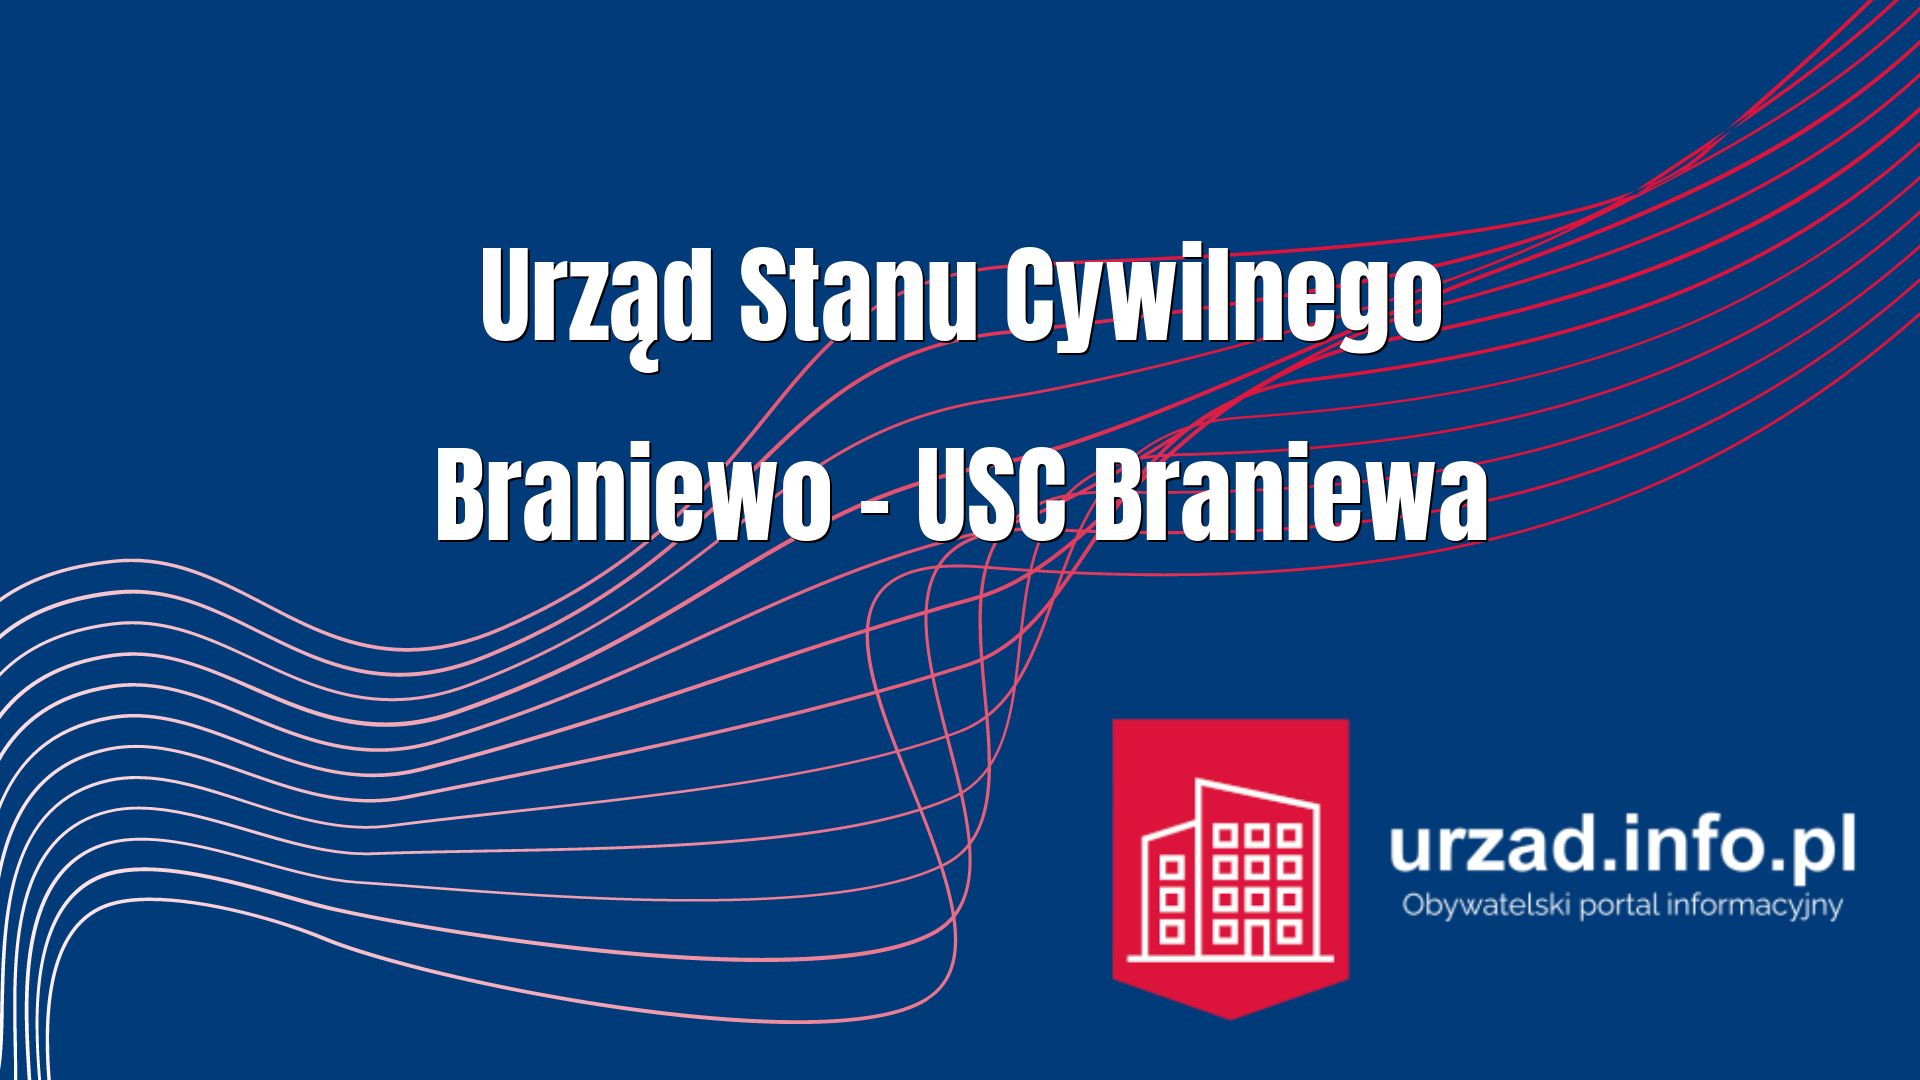 Urząd Stanu Cywilnego Braniewo – USC Braniewa